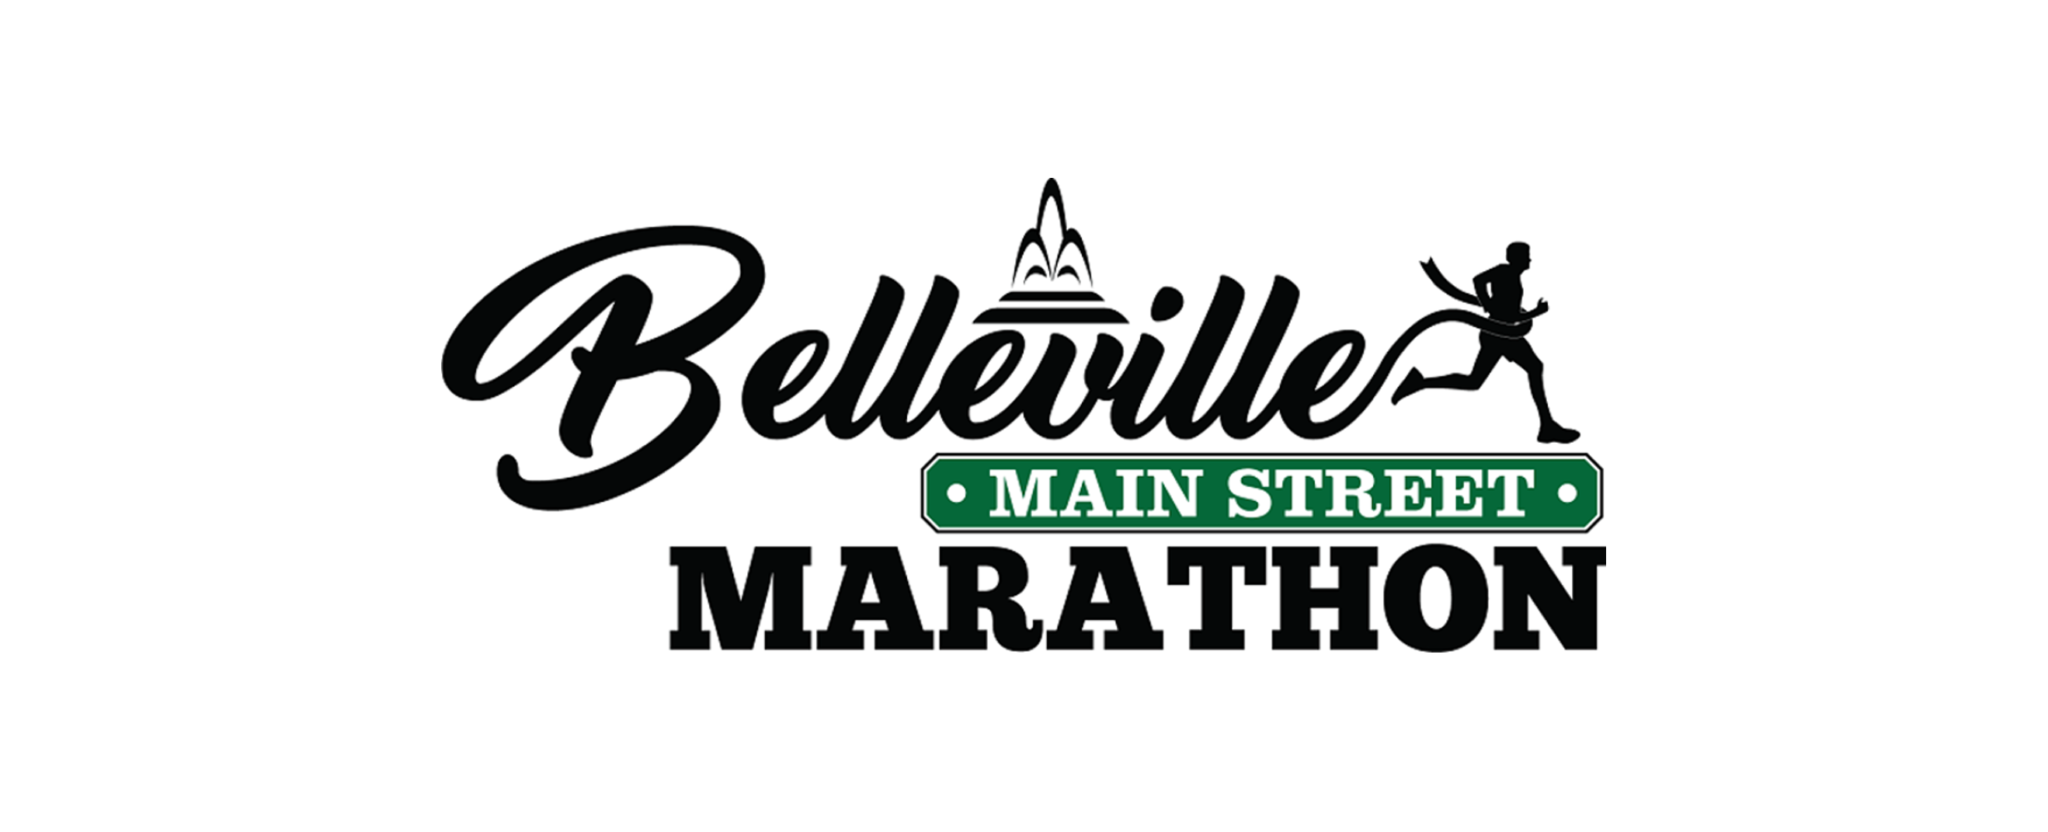 Results Belleville Marathon